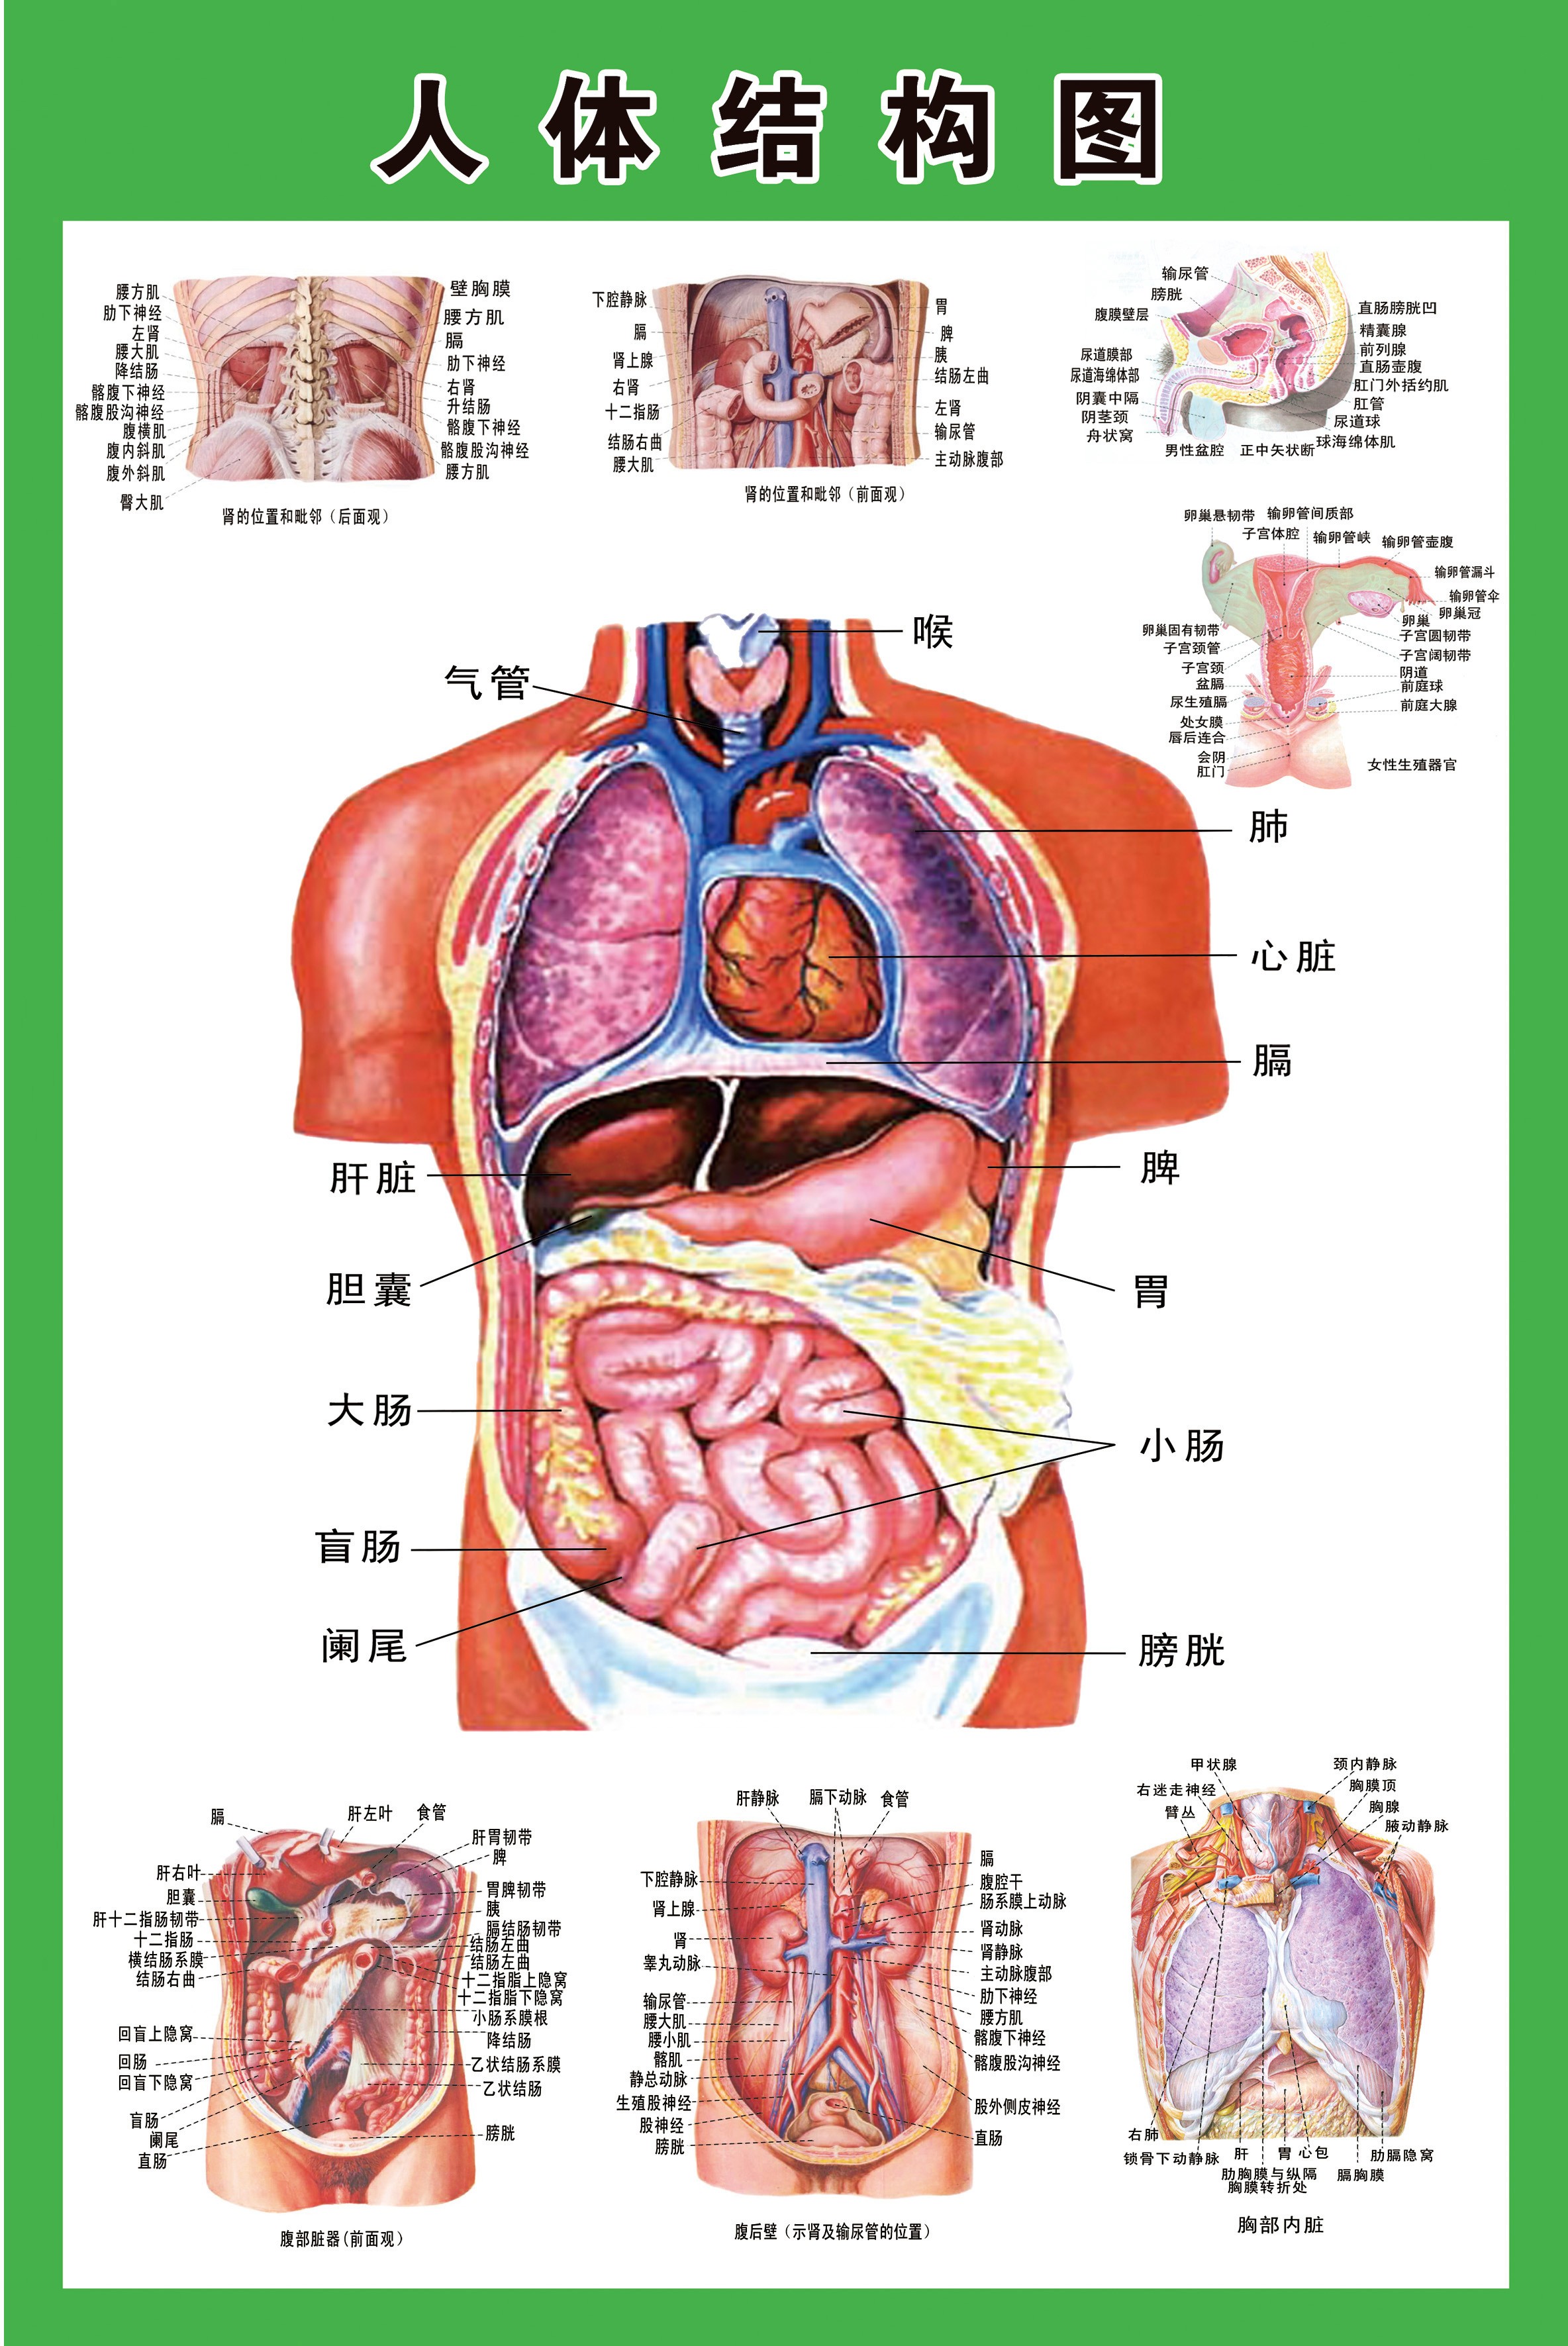 人体骨骼挂图人体内脏解剖系统示意图医学宣传挂图人体器官心脏结构图